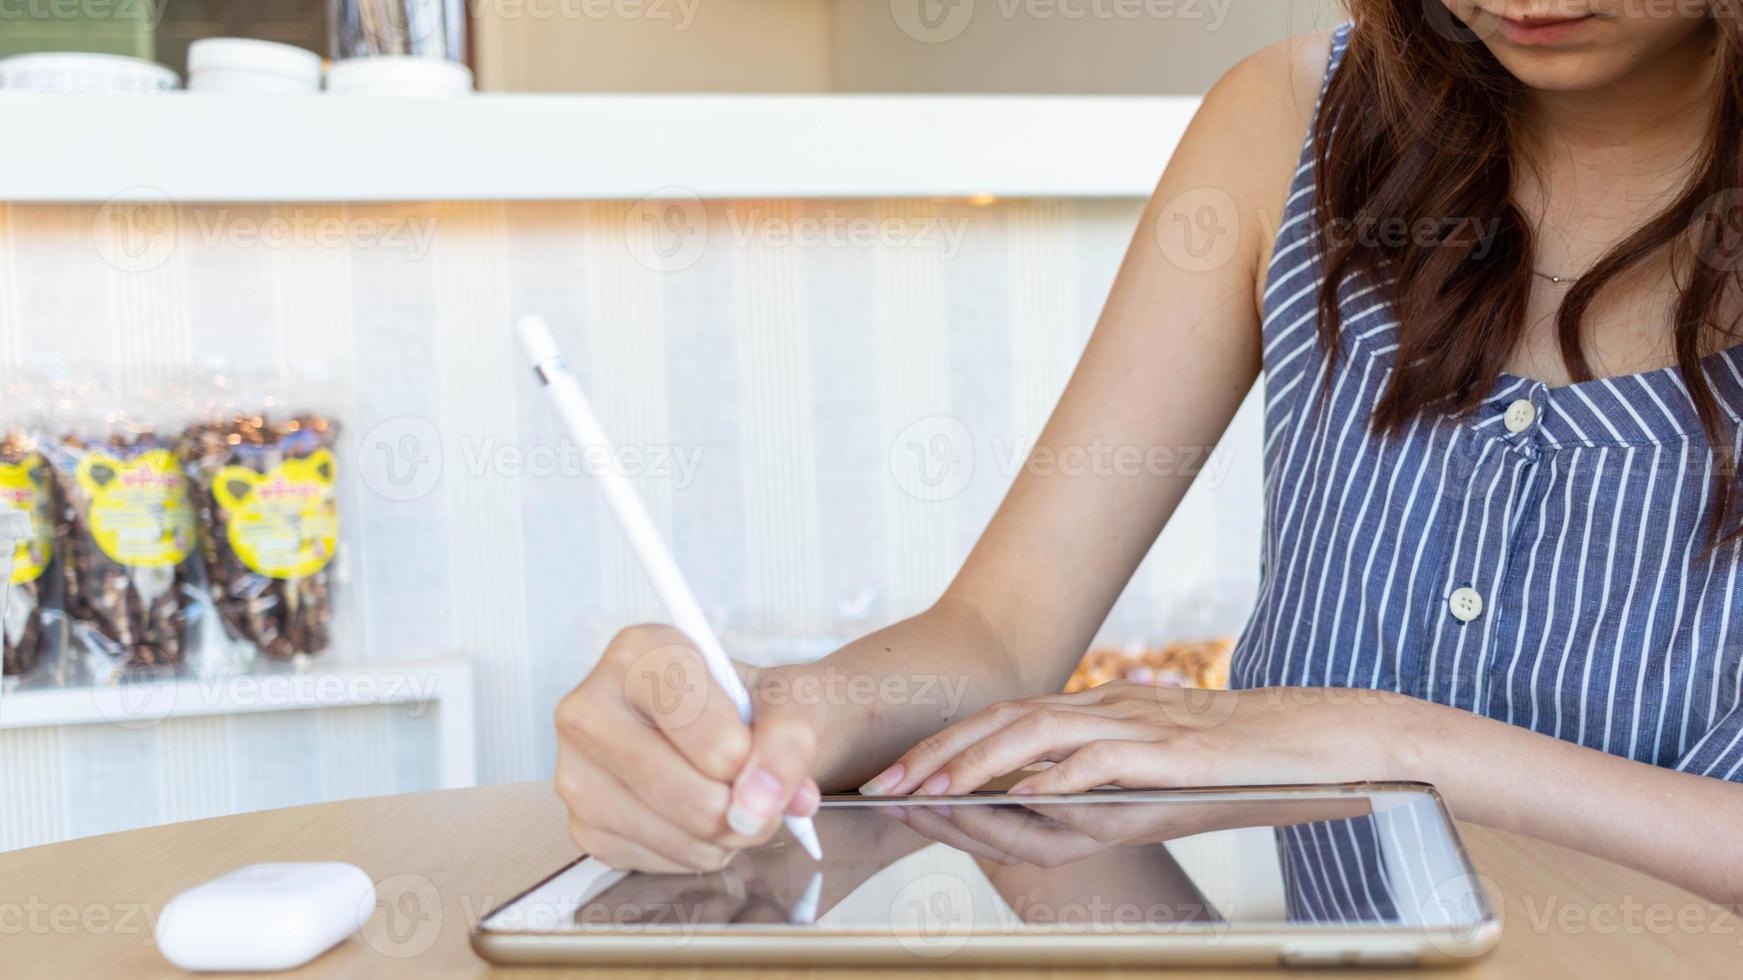 jong vrouw Holding een stylus in haar hand- naar gebruik langs met toepassing in tablet naar test en ontwikkelen ux ui systeem en naar ontwerp toepassing dat kan werk efficiënt met perfect ux ui systeem. foto